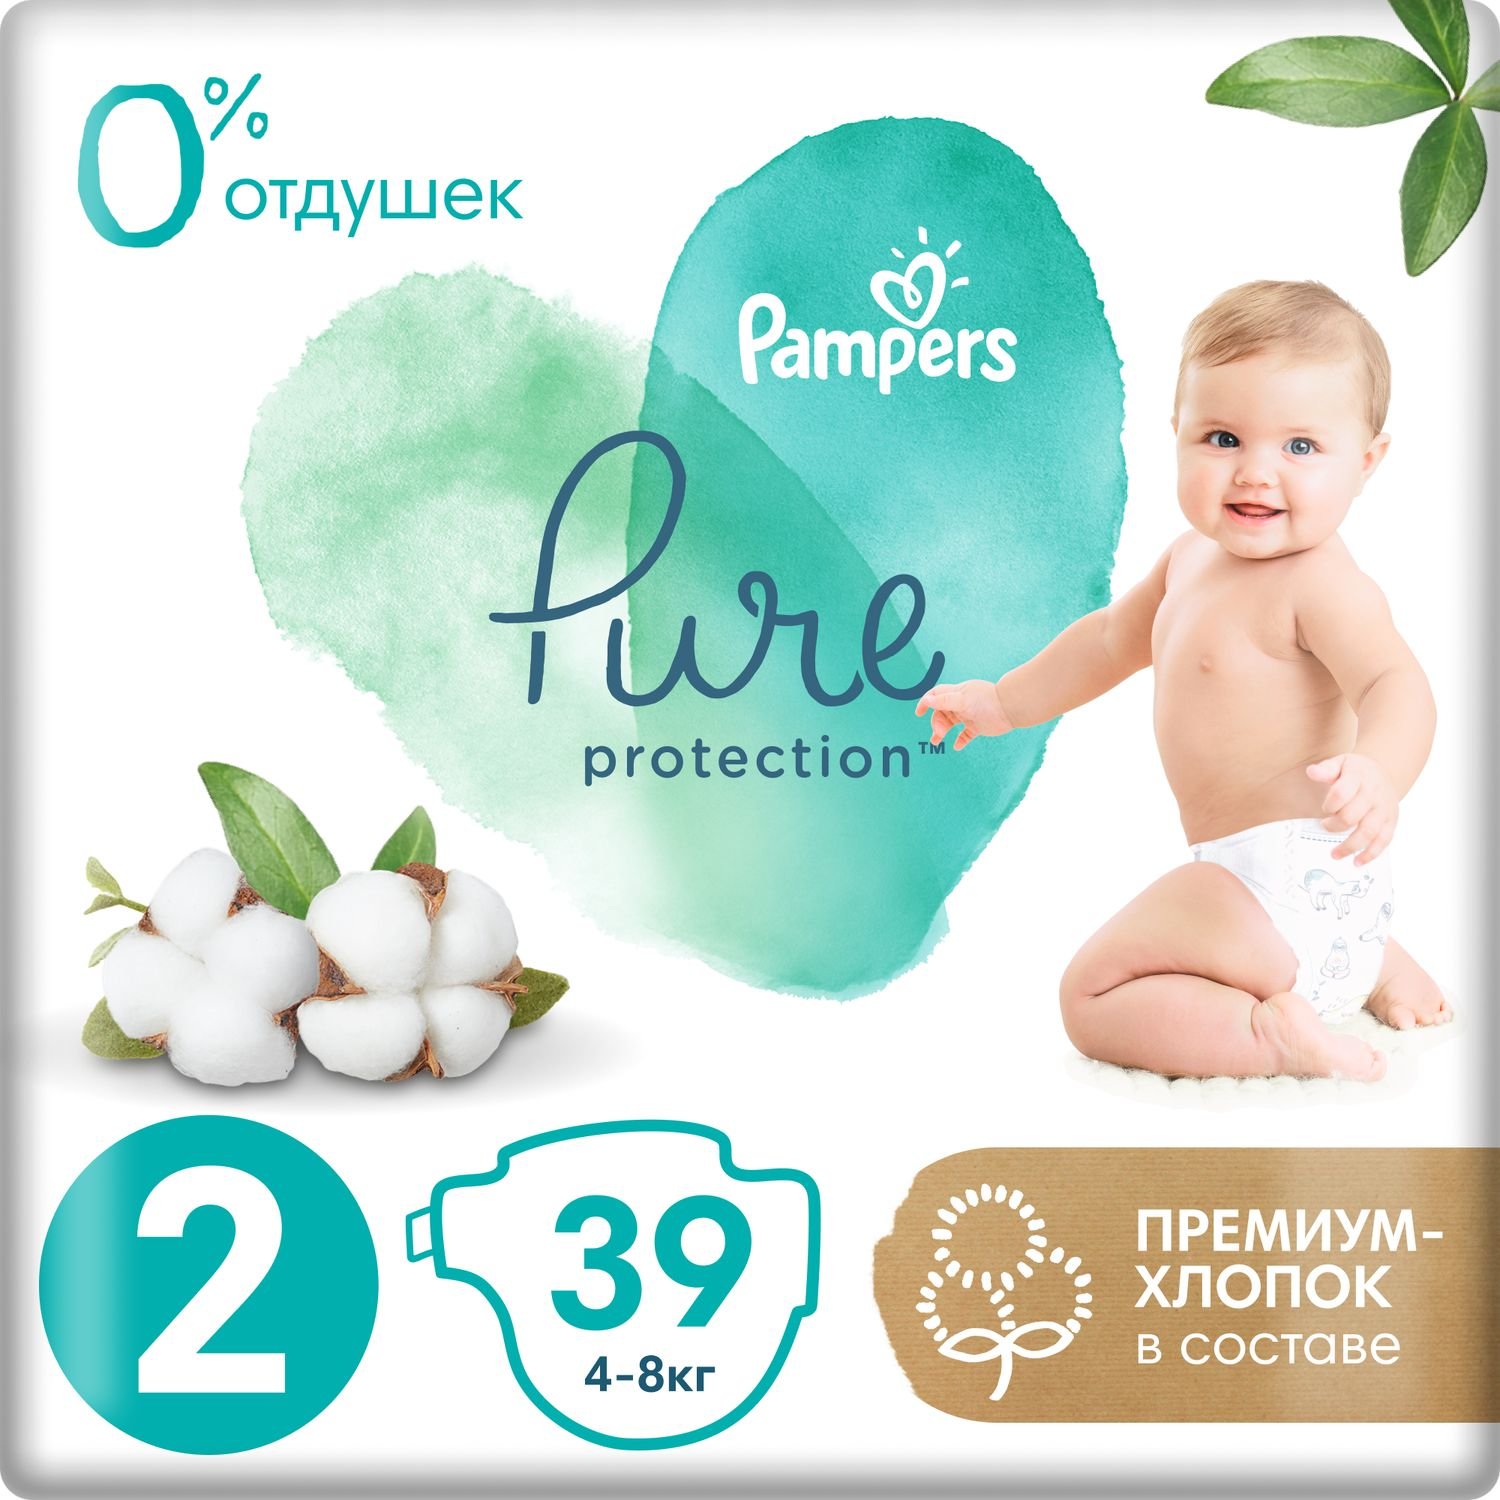 Подгузники Pampers Pure Protection Mini 4-8кг 39шт